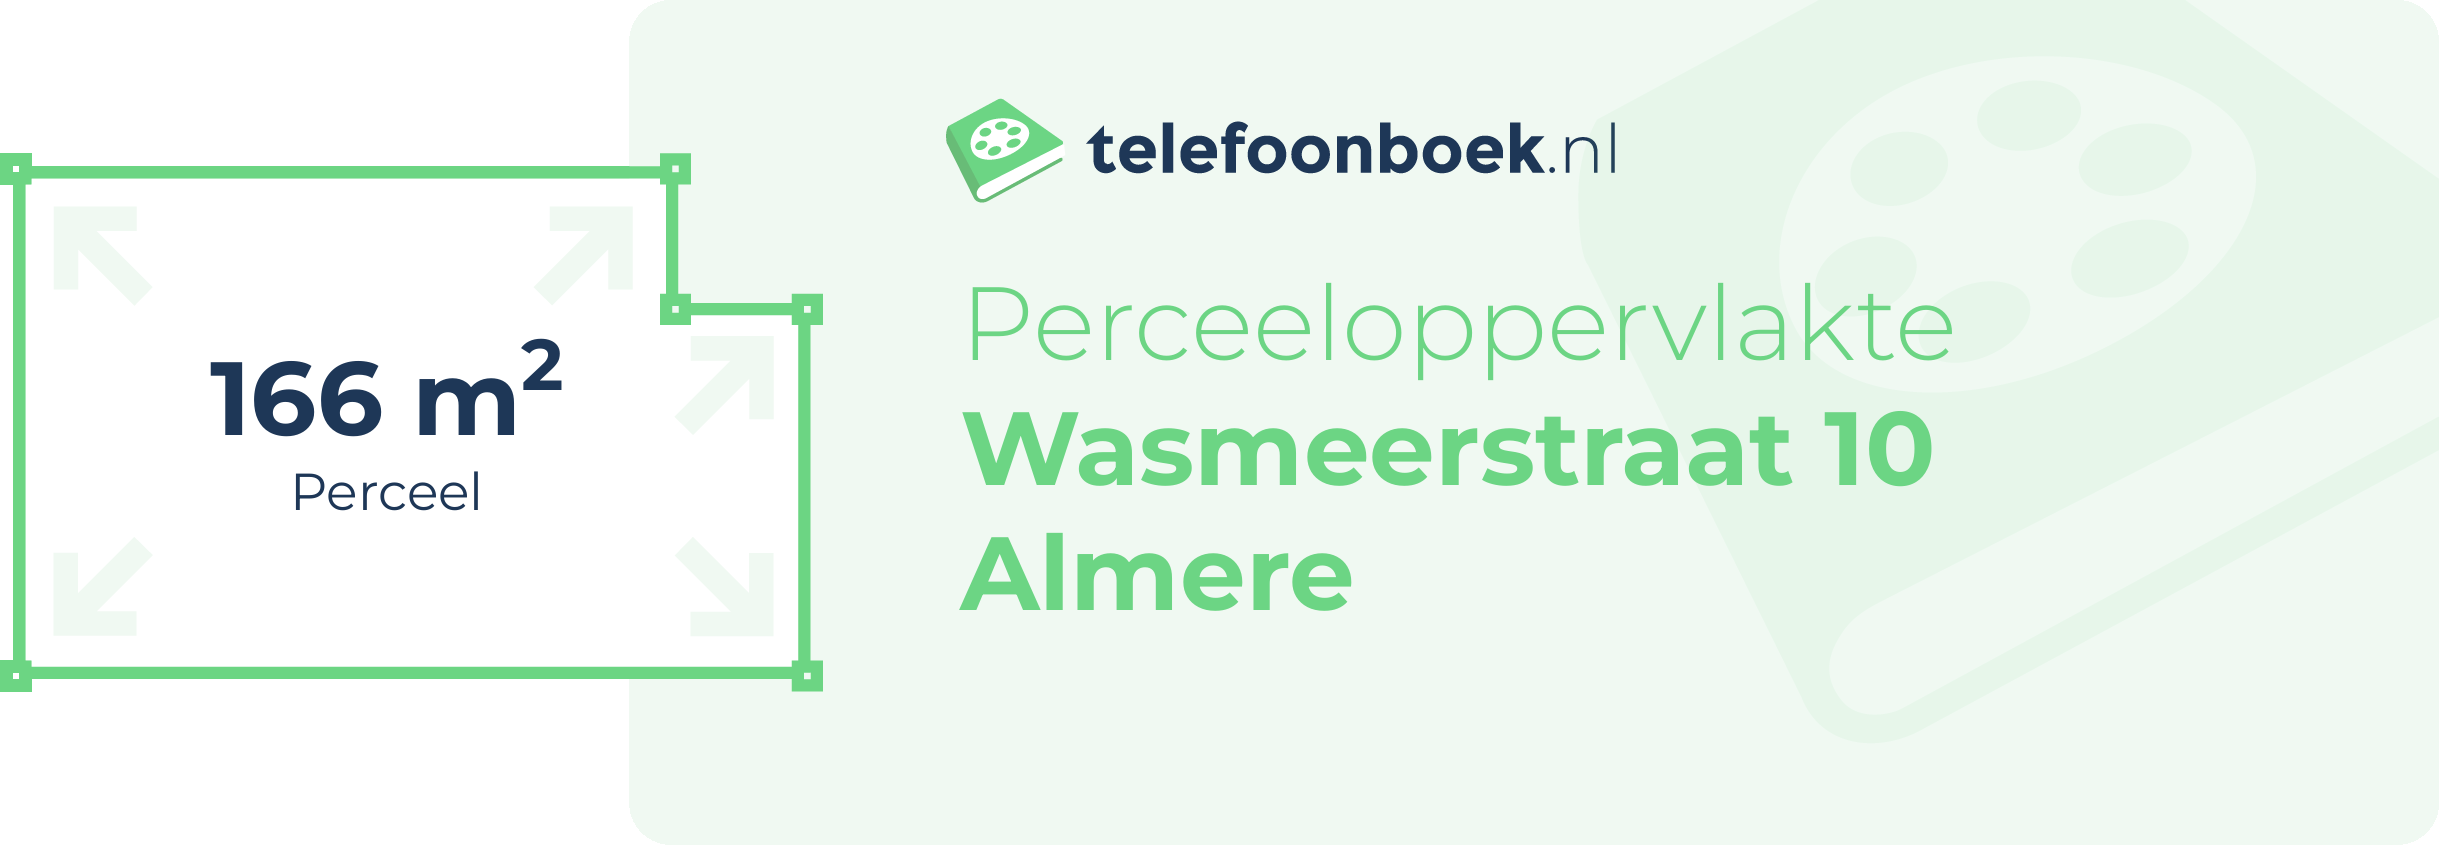 Perceeloppervlakte Wasmeerstraat 10 Almere